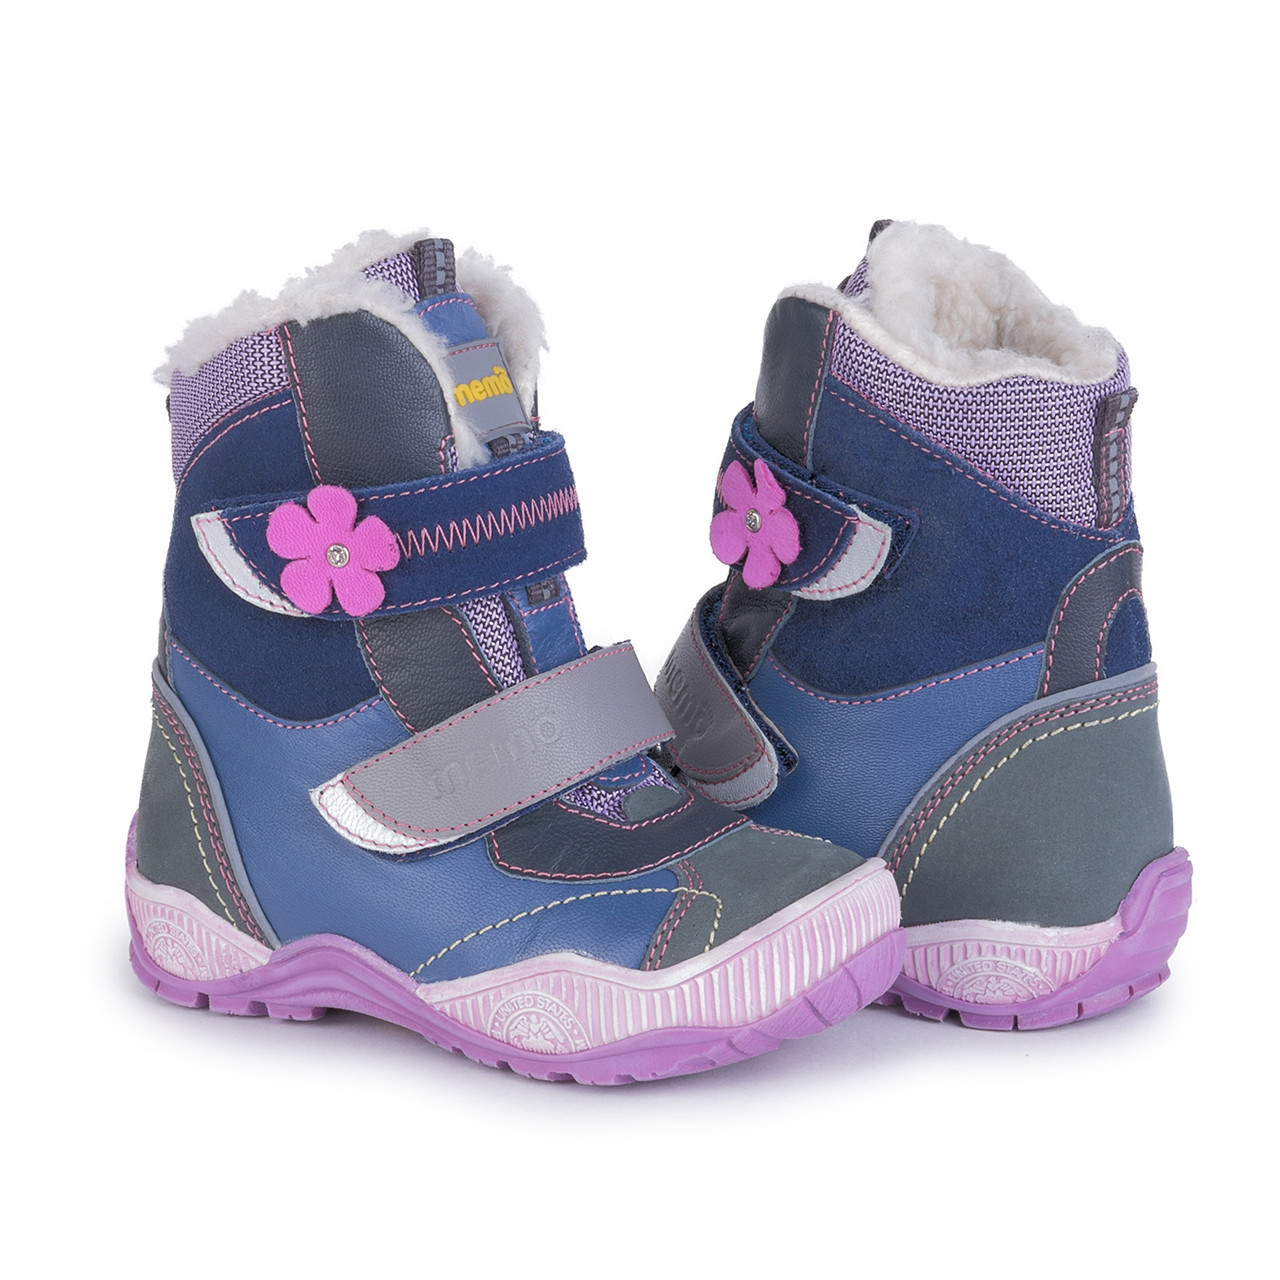 

Зимние ортопедические ботинки для детей Memo Aspen 1JB фиолетовые 33, Фиолетовый